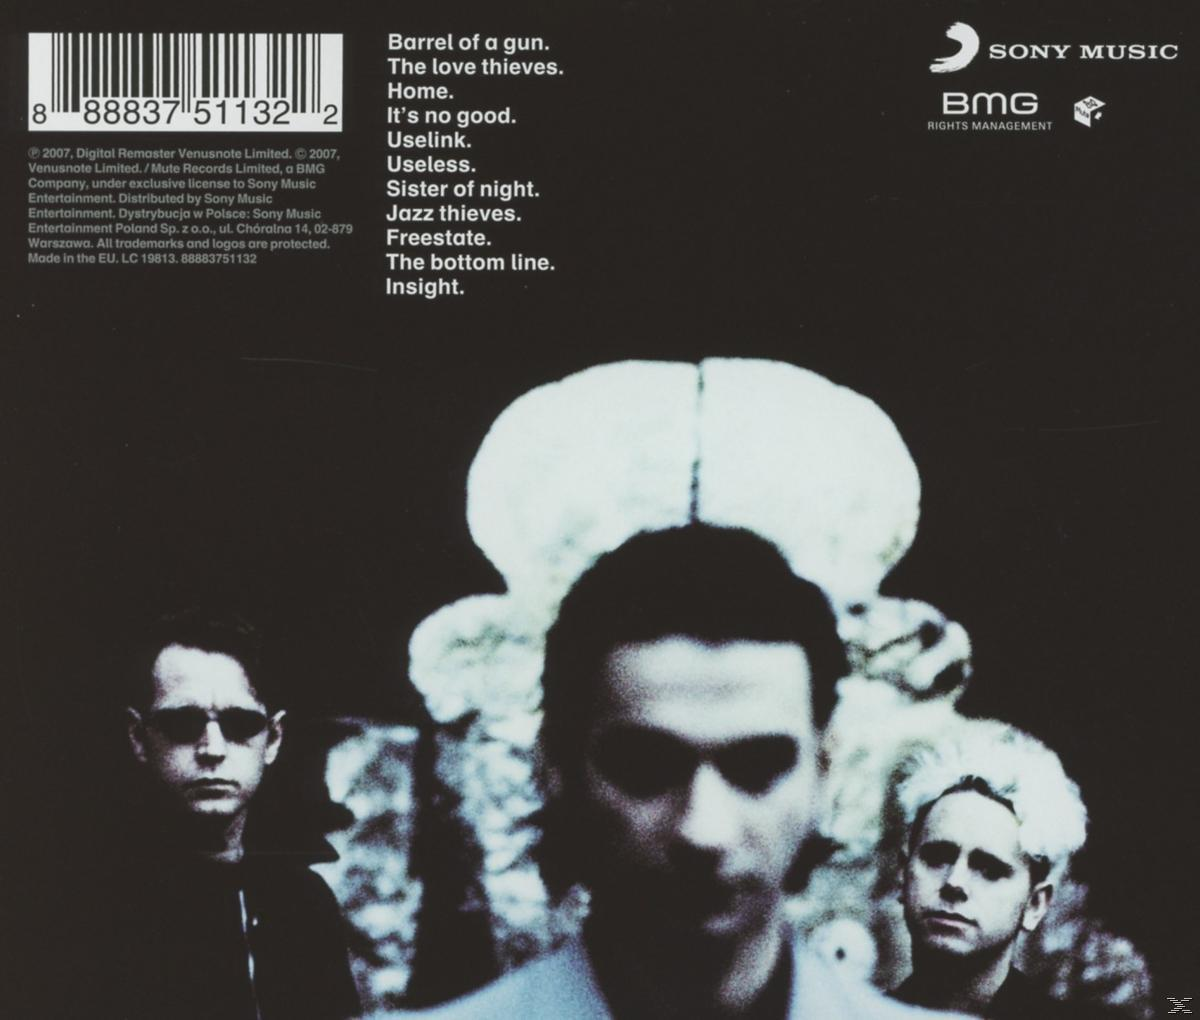 Depeche Mode - Ultra - (CD)